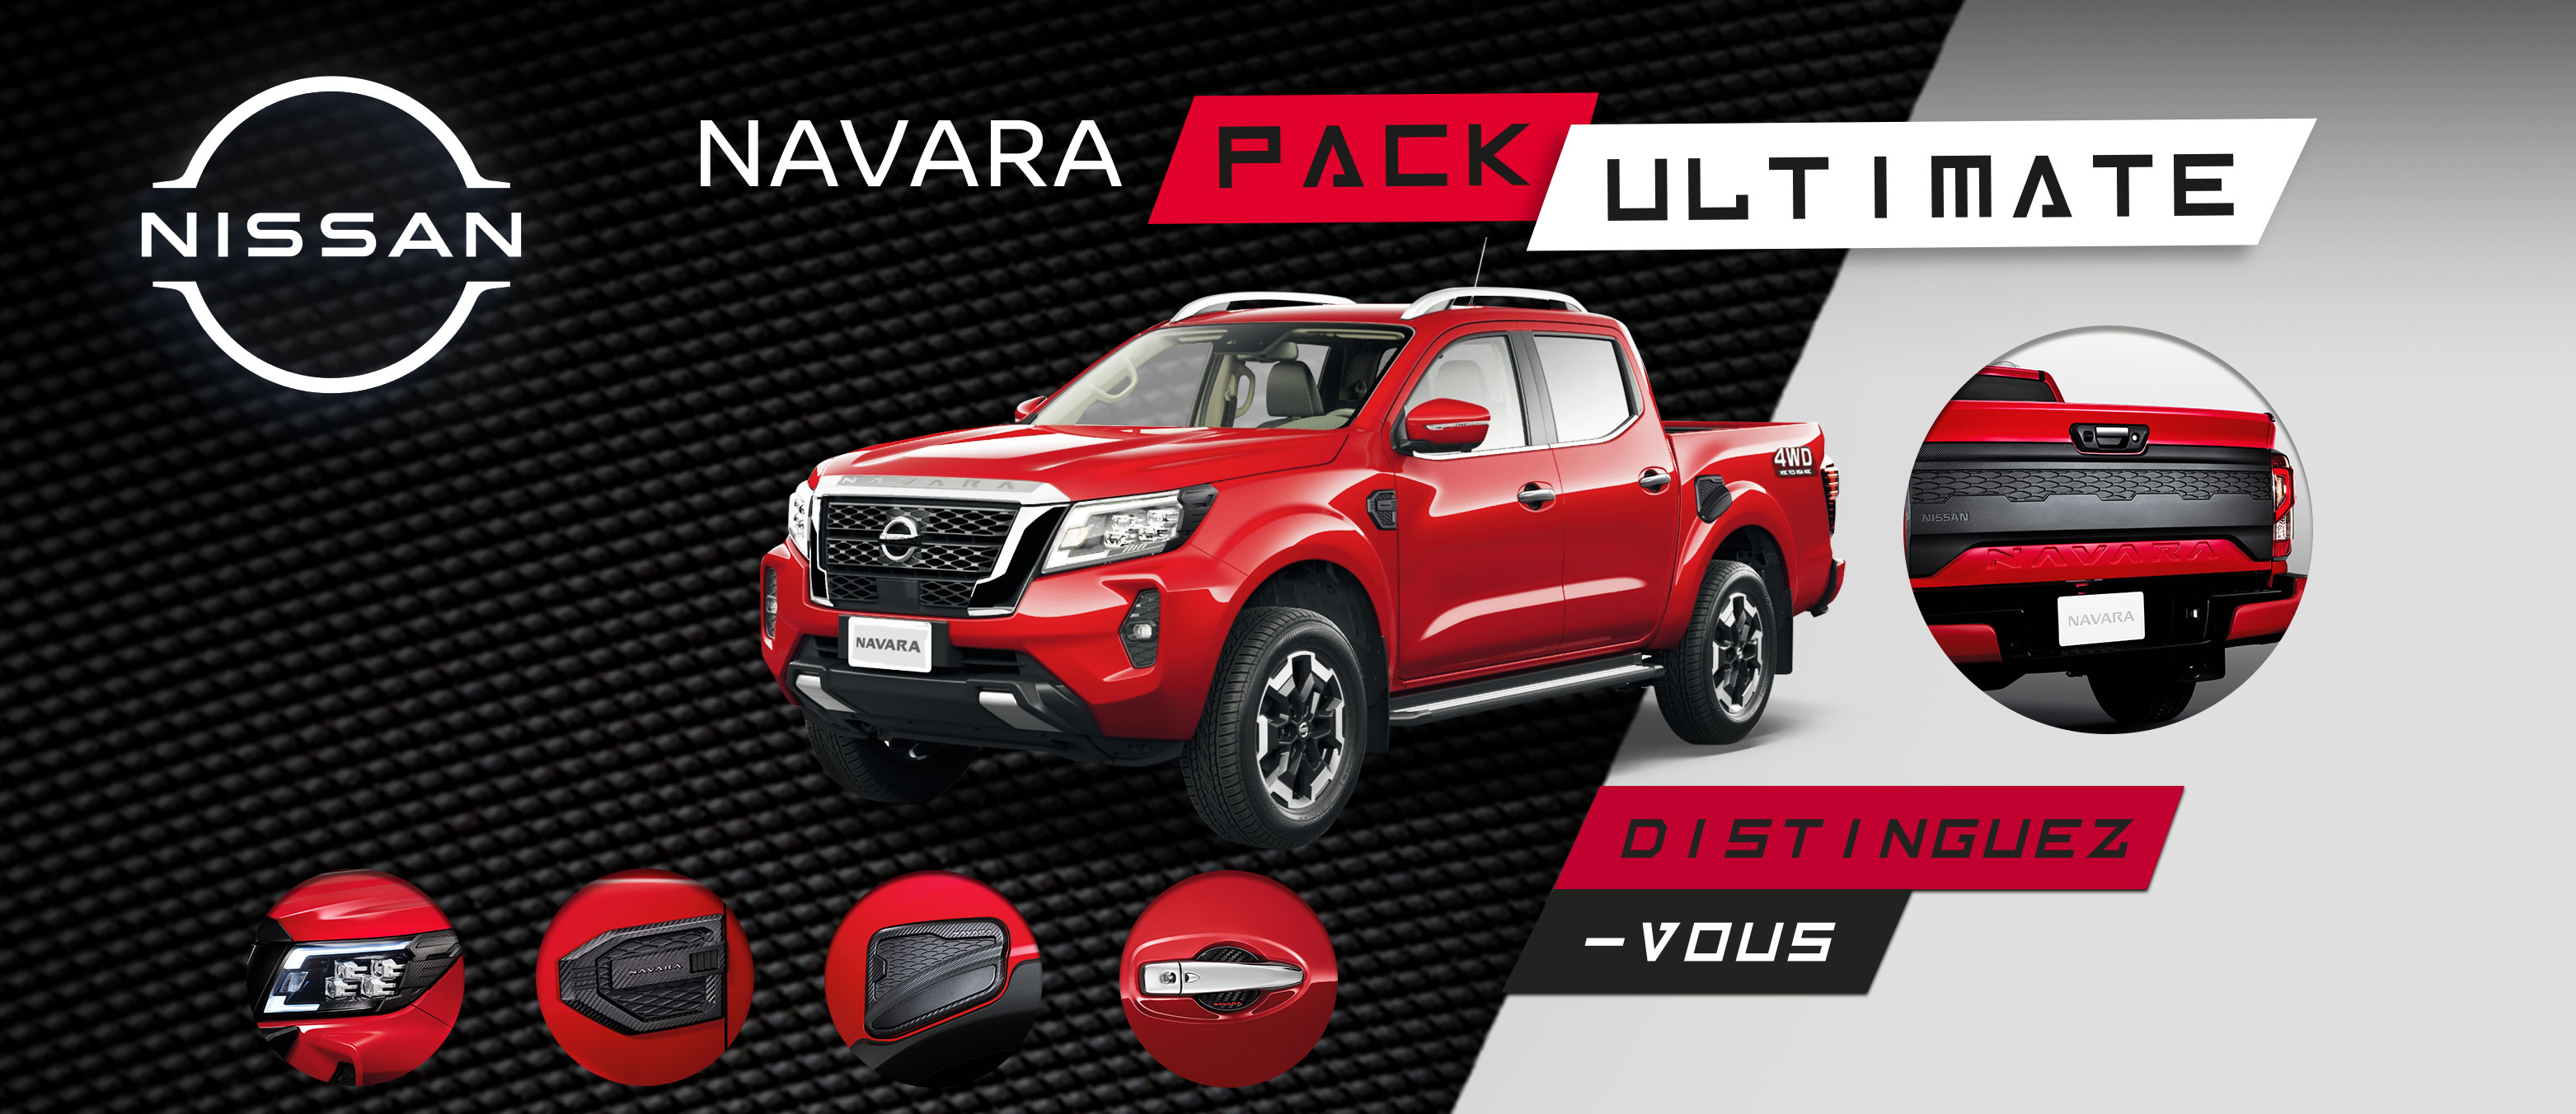 Navara Pack Ultimate